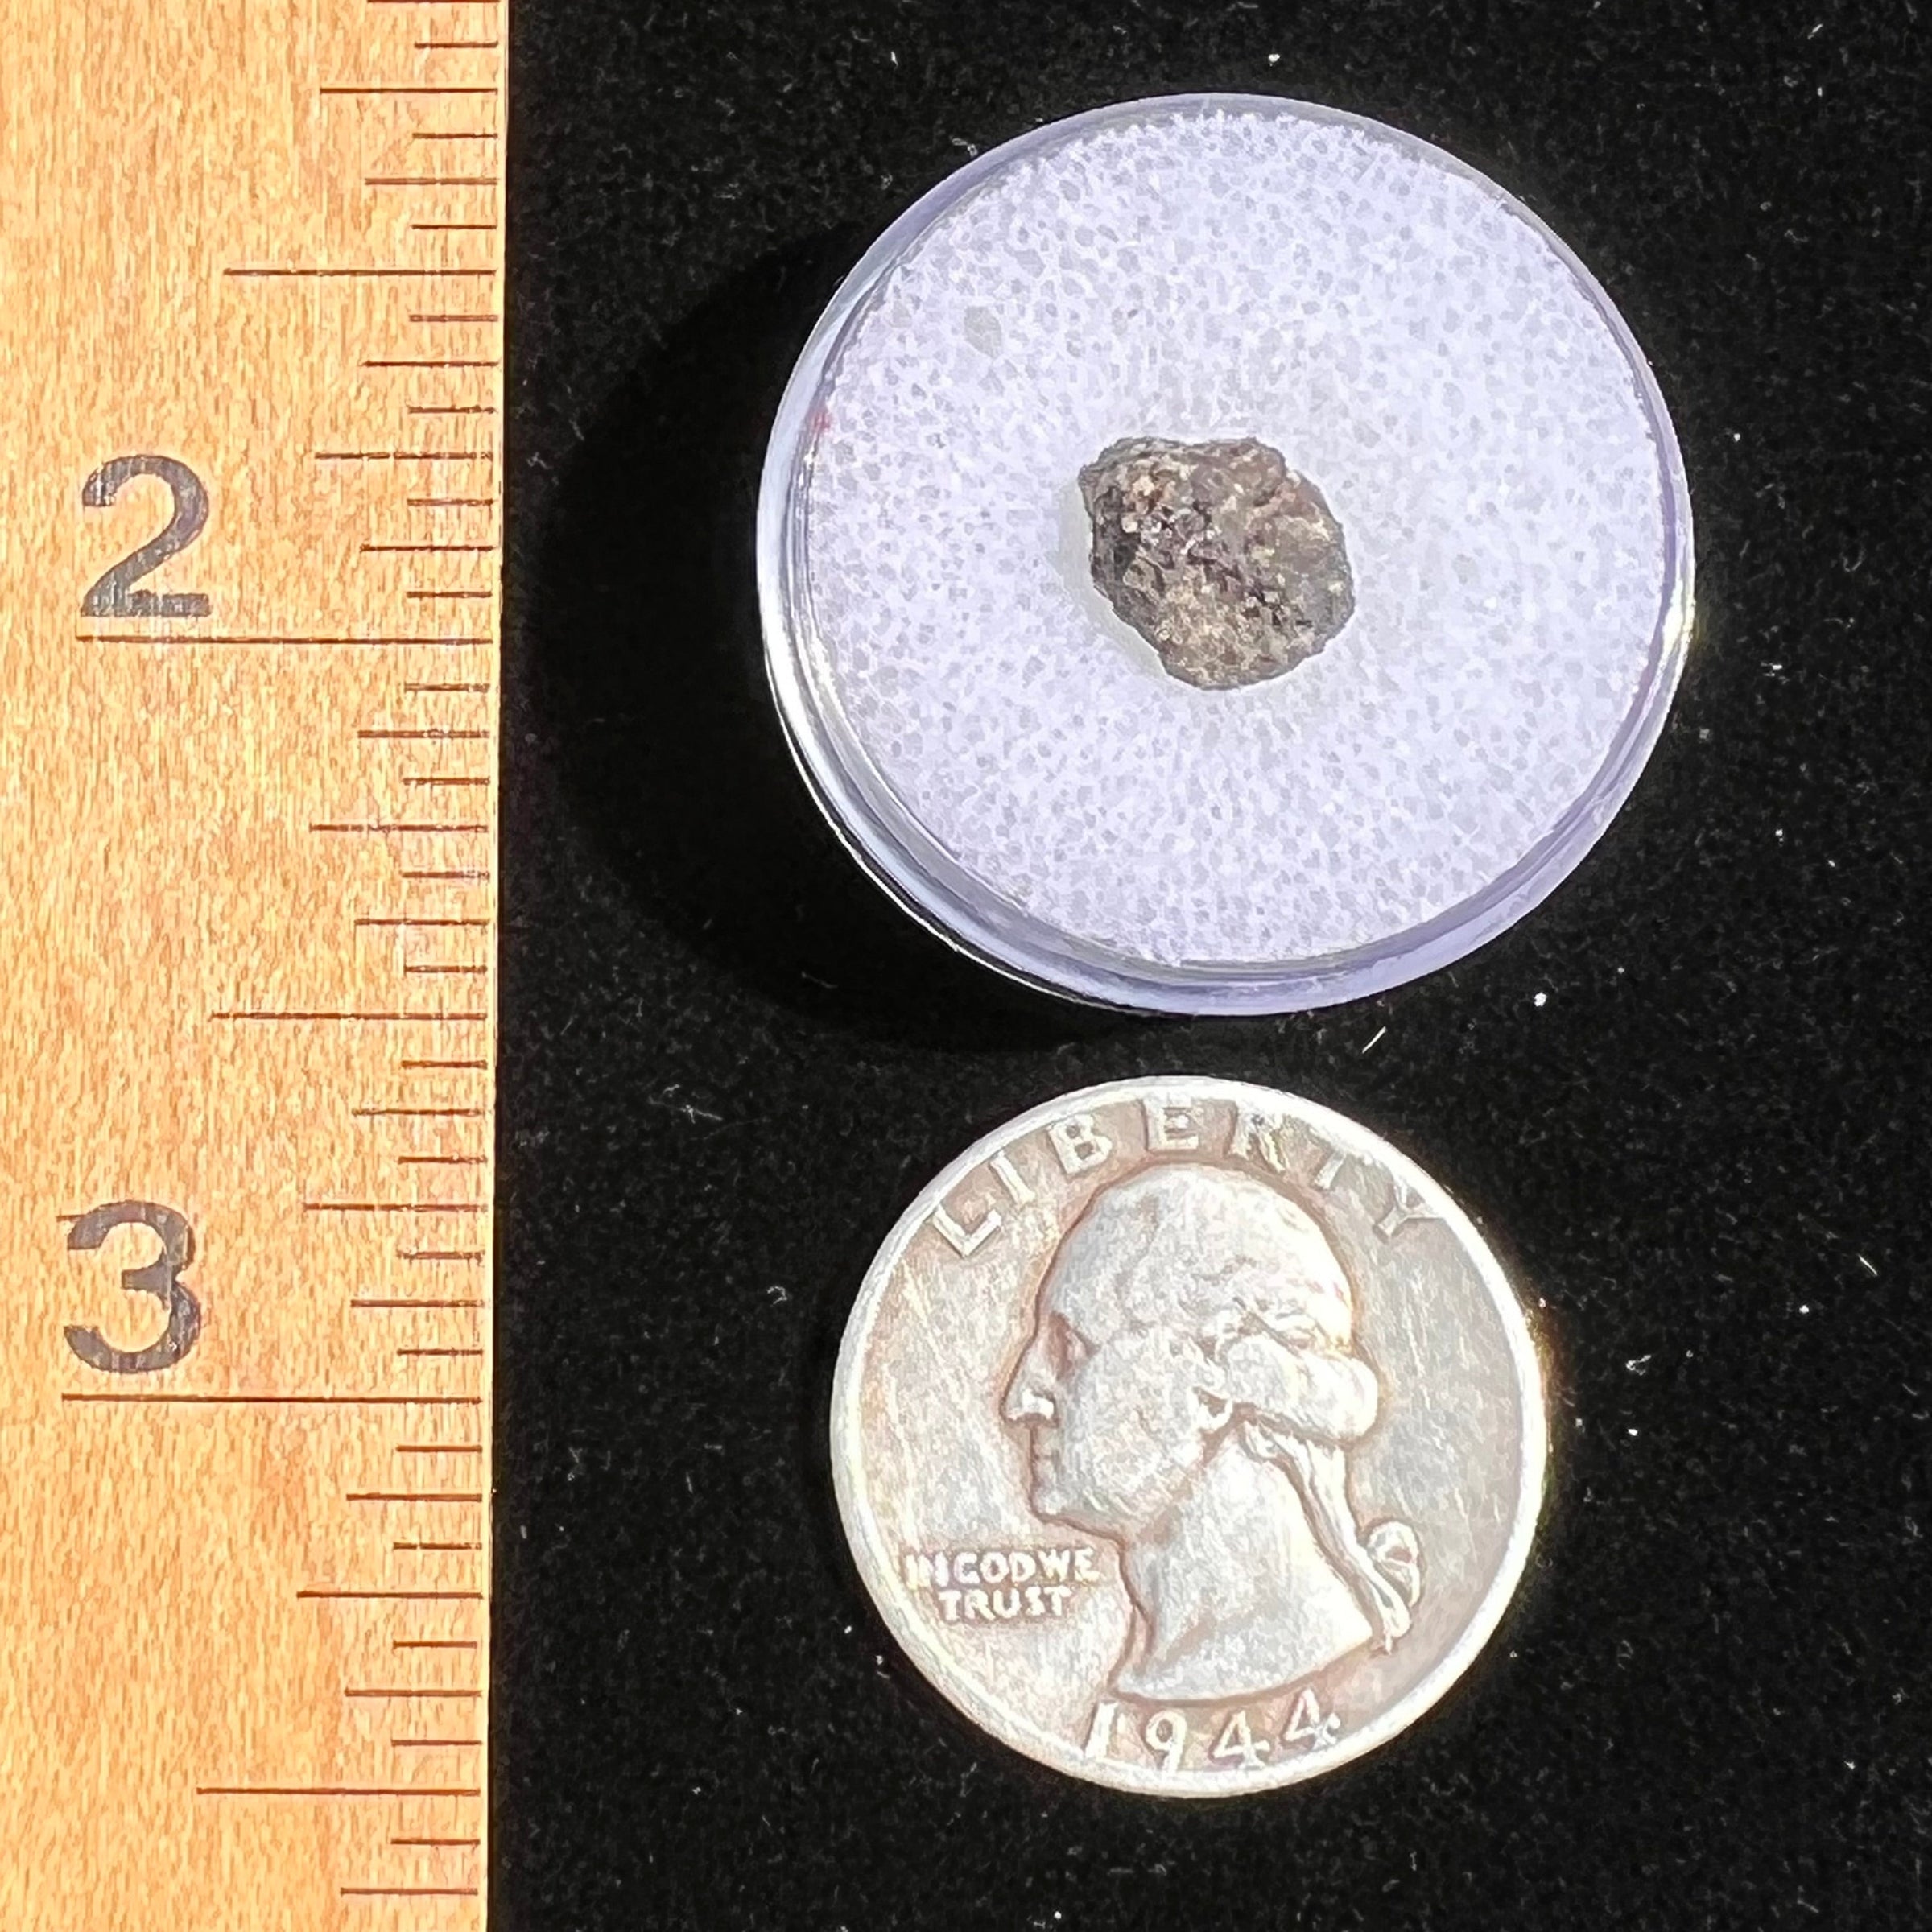 NWA 7397 Mars Meteorite small fragment #76